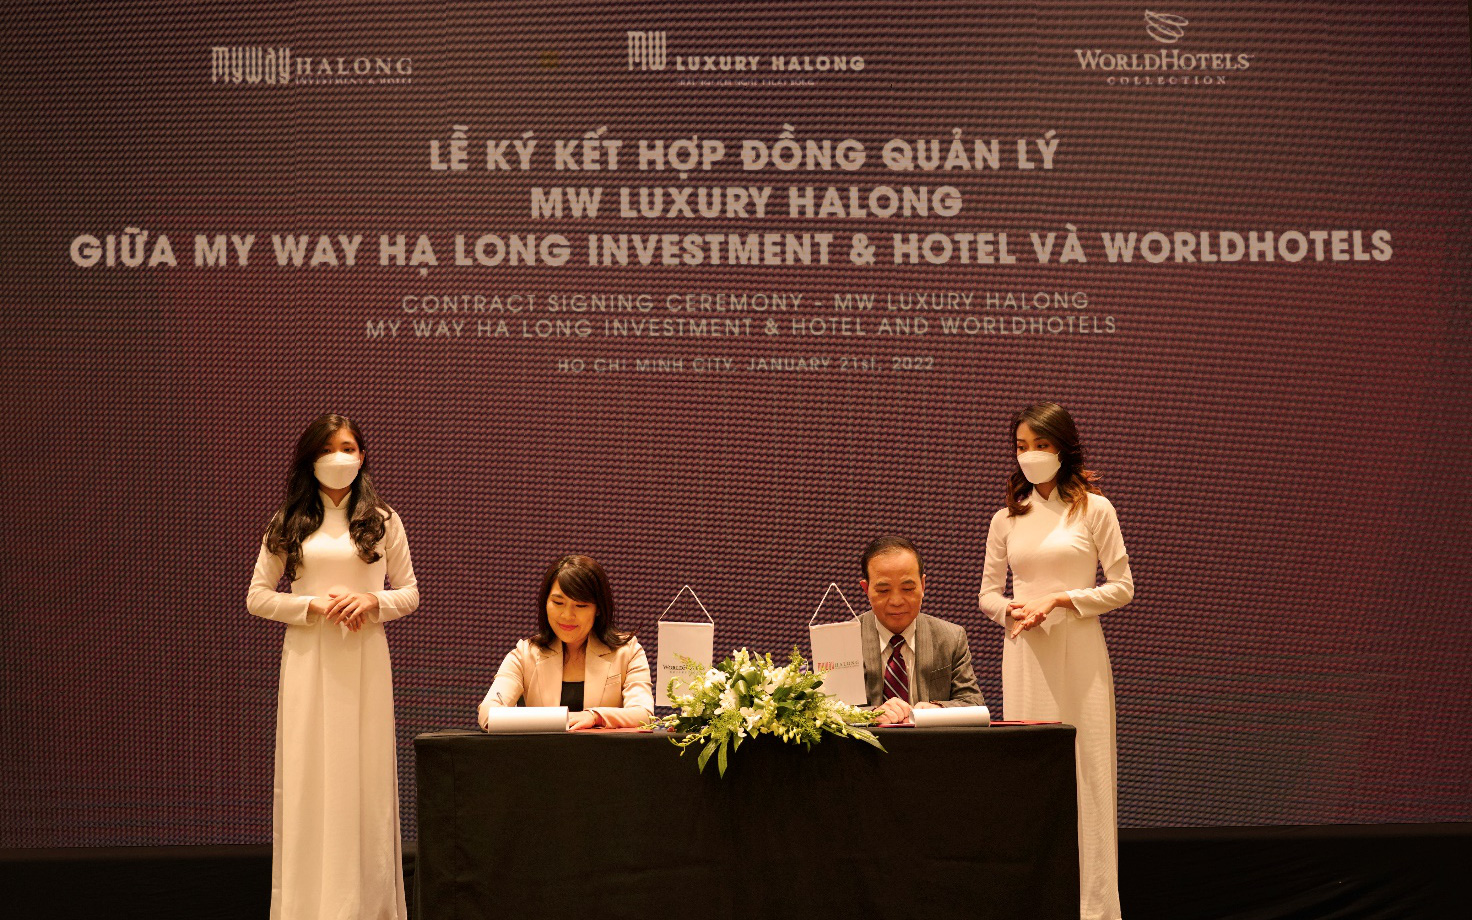 MW Luxury Halong hợp tác quản lý và vận hành với WorldHotels